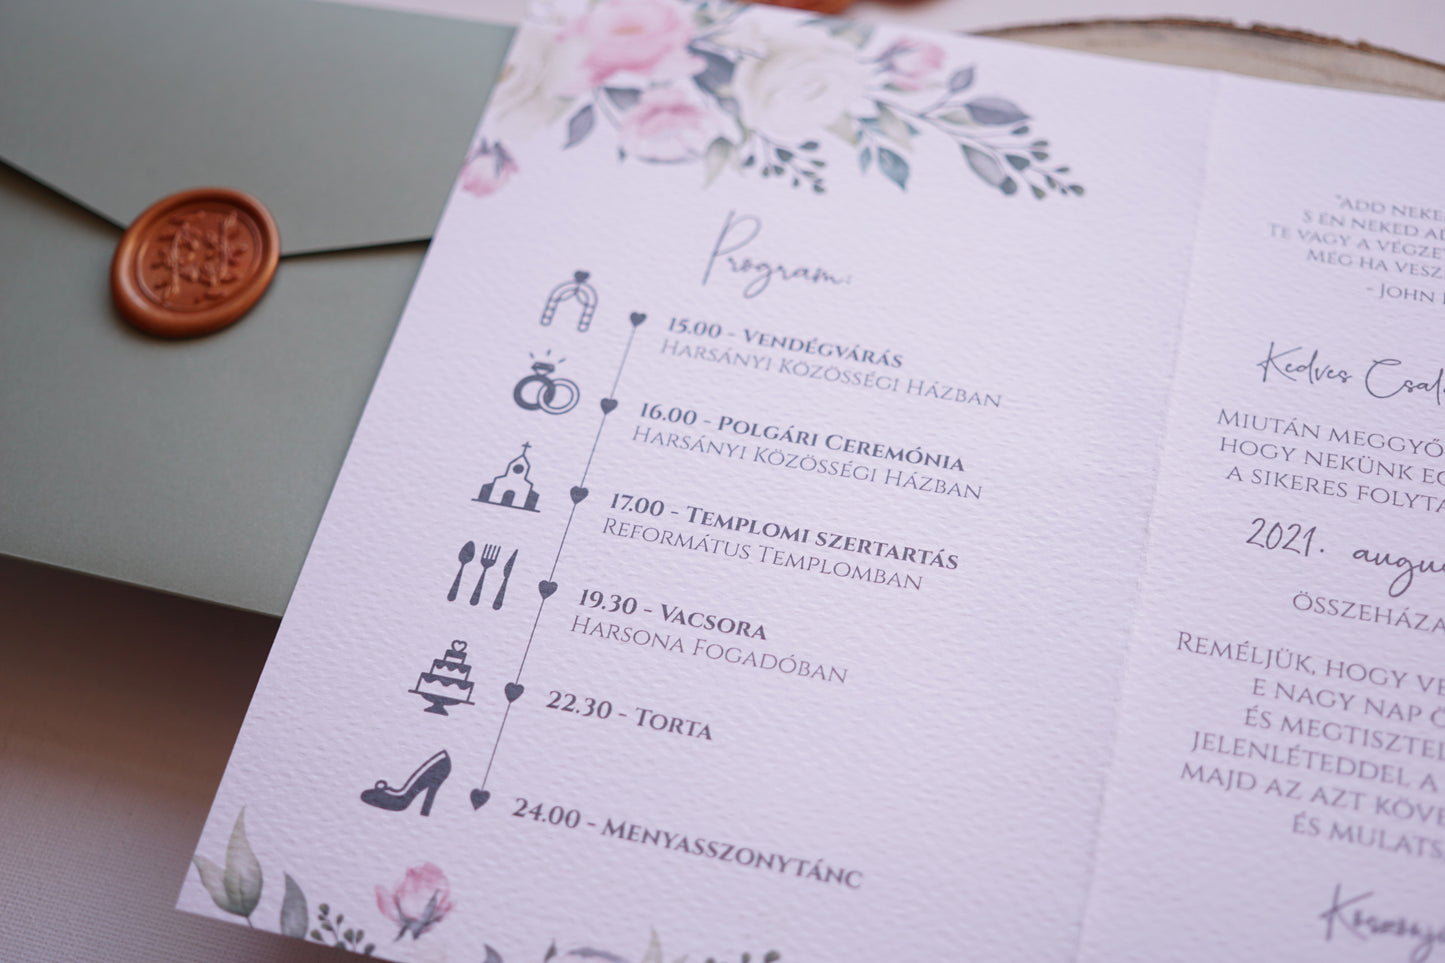 Esküvői meghívó EM21 - Kinyitható virágmintás esküvői meghívó - Erdélyi Esküvői Meghívók - Wedding invitation EM21 - Kinyitható virágmintás esküvői meghívó - invitatii de nunta EM21 - Kinyitható virágmintás esküvői meghívó